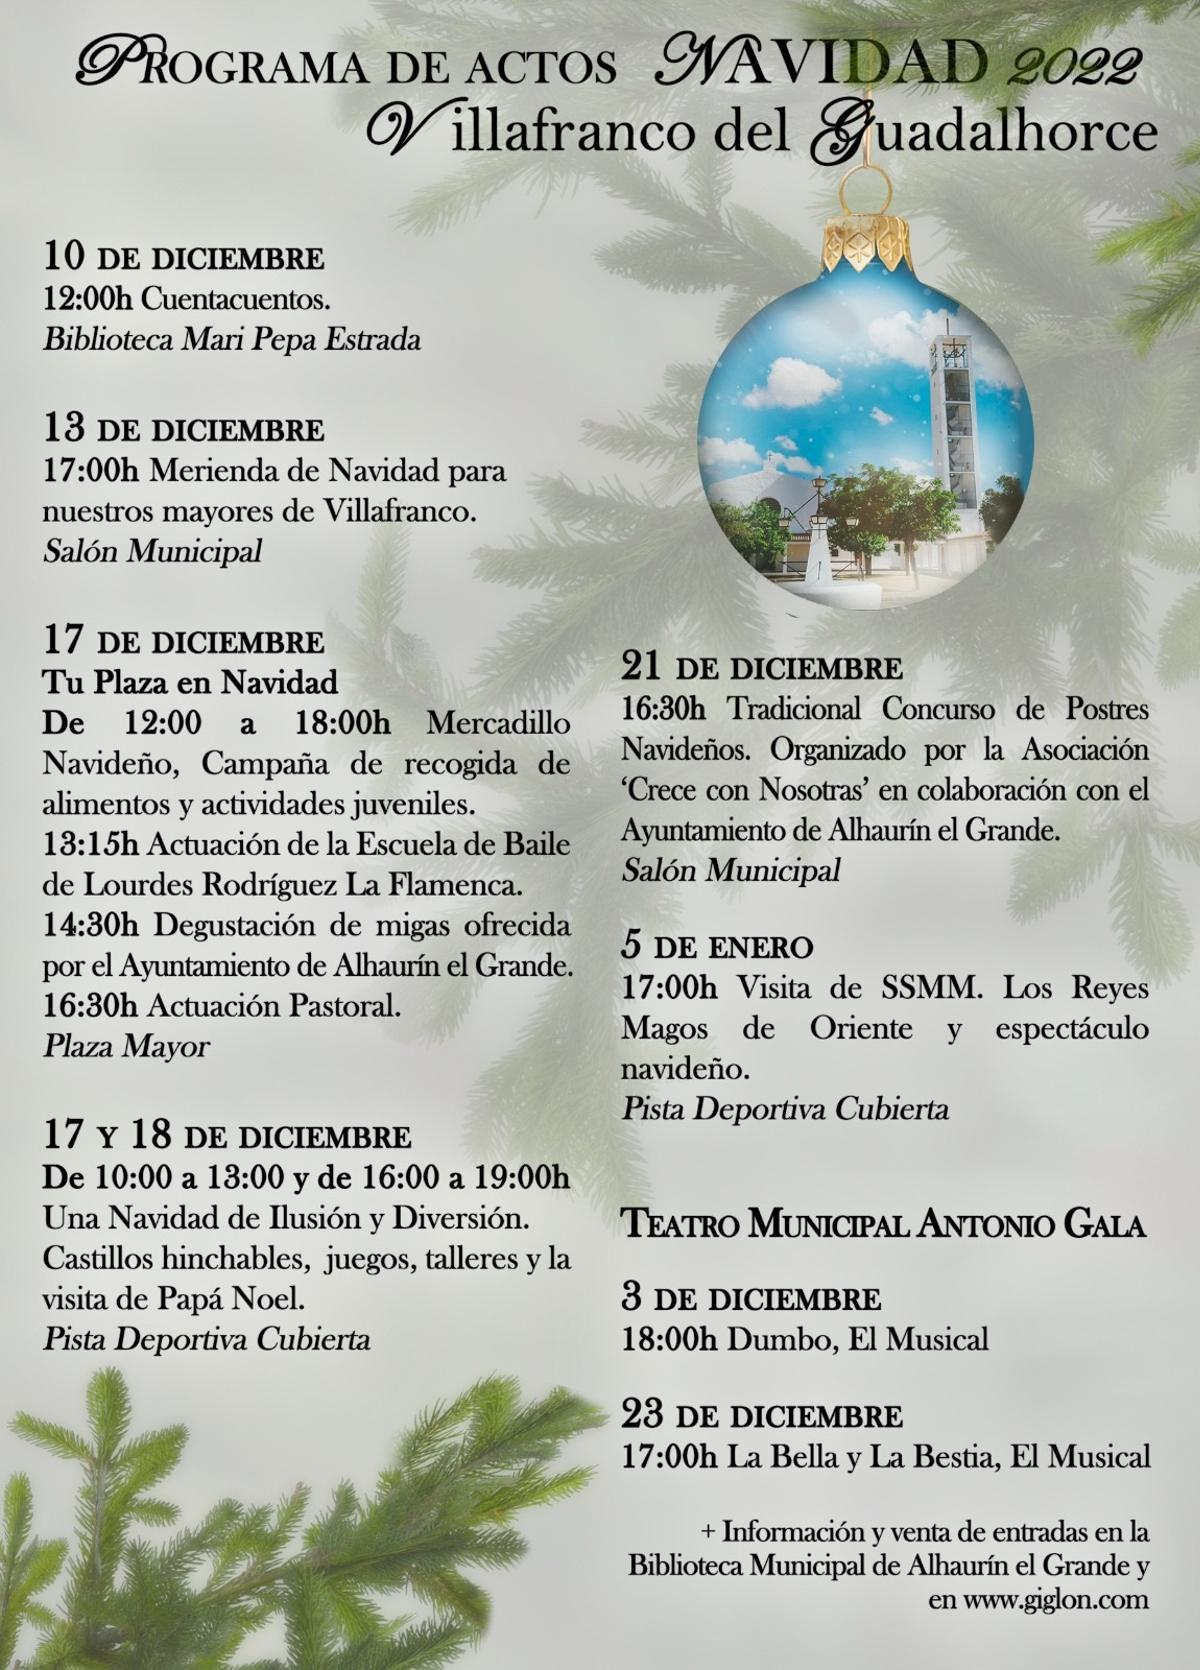 Actos programados en Villafranco del Guadalhorce con motivo de la Navidad.